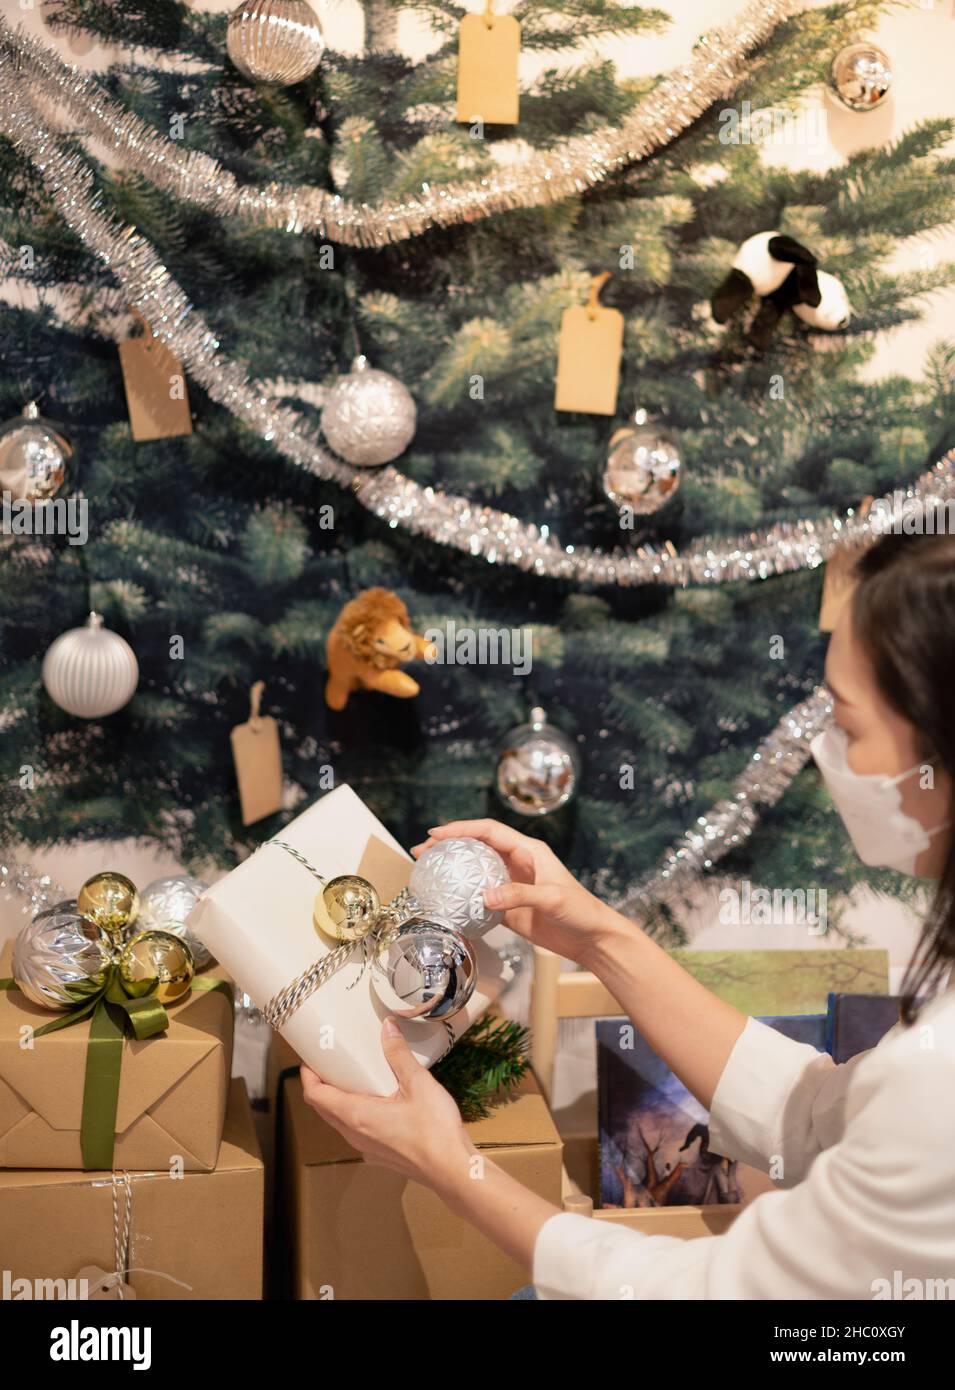 Weibliche Hände halten Weihnachten Geschenk-Box mit Gold-und Silberkugel Weihnachtsschmuck für Weihnachten und Neujahr Feier und Dekoration. Stockfoto